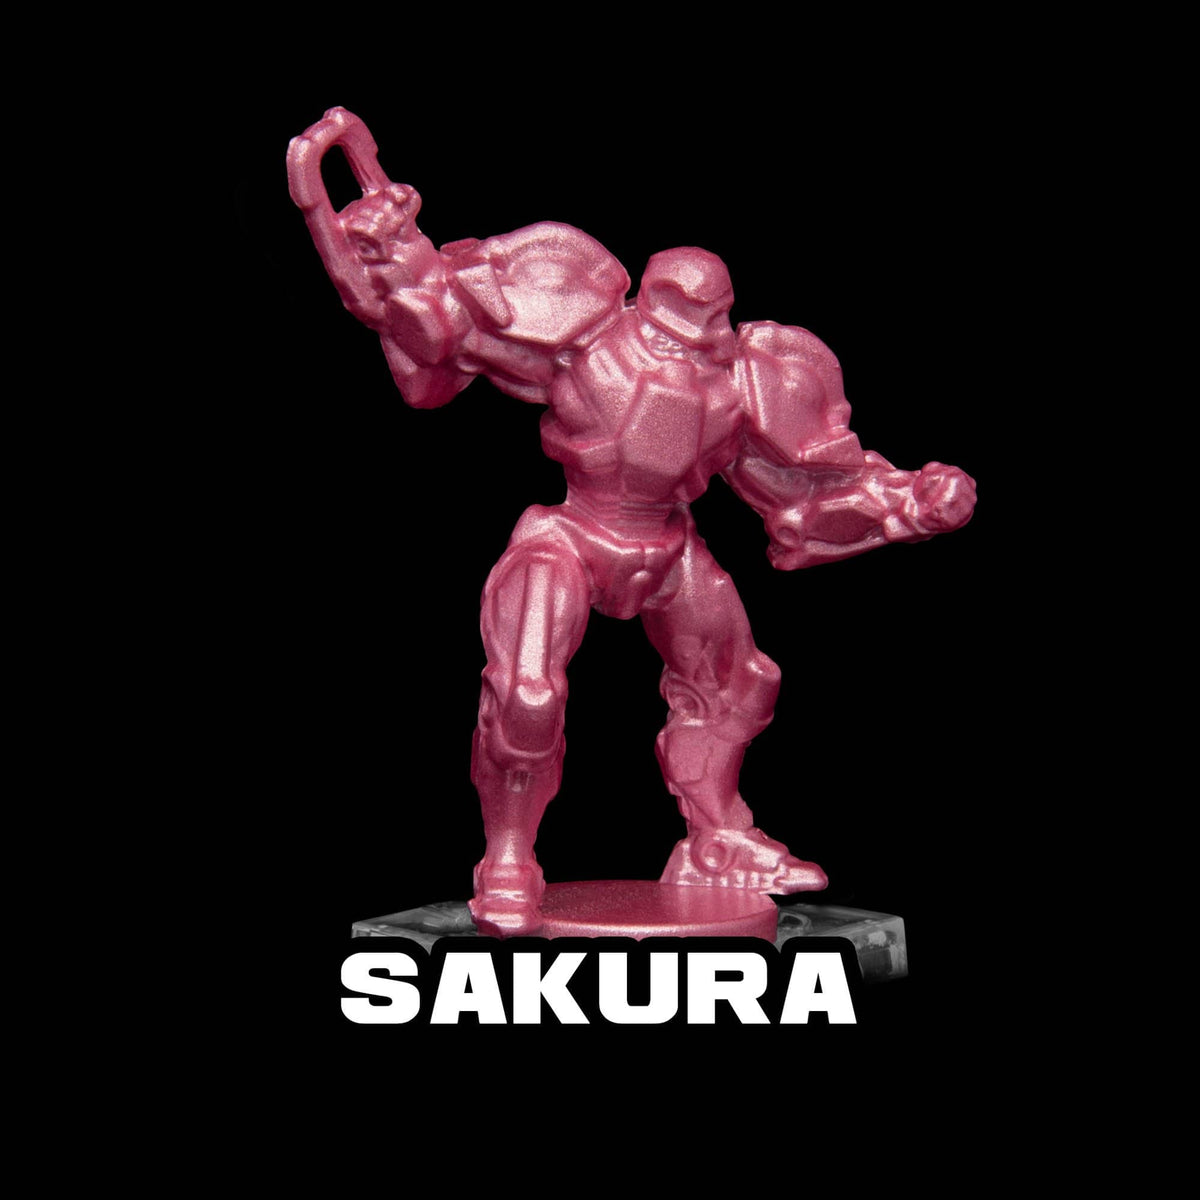 Sakura Metallic Acrylic Paint Metallic Turbo Dork Exit 23 Games Sakura Metallic Acrylic Paint